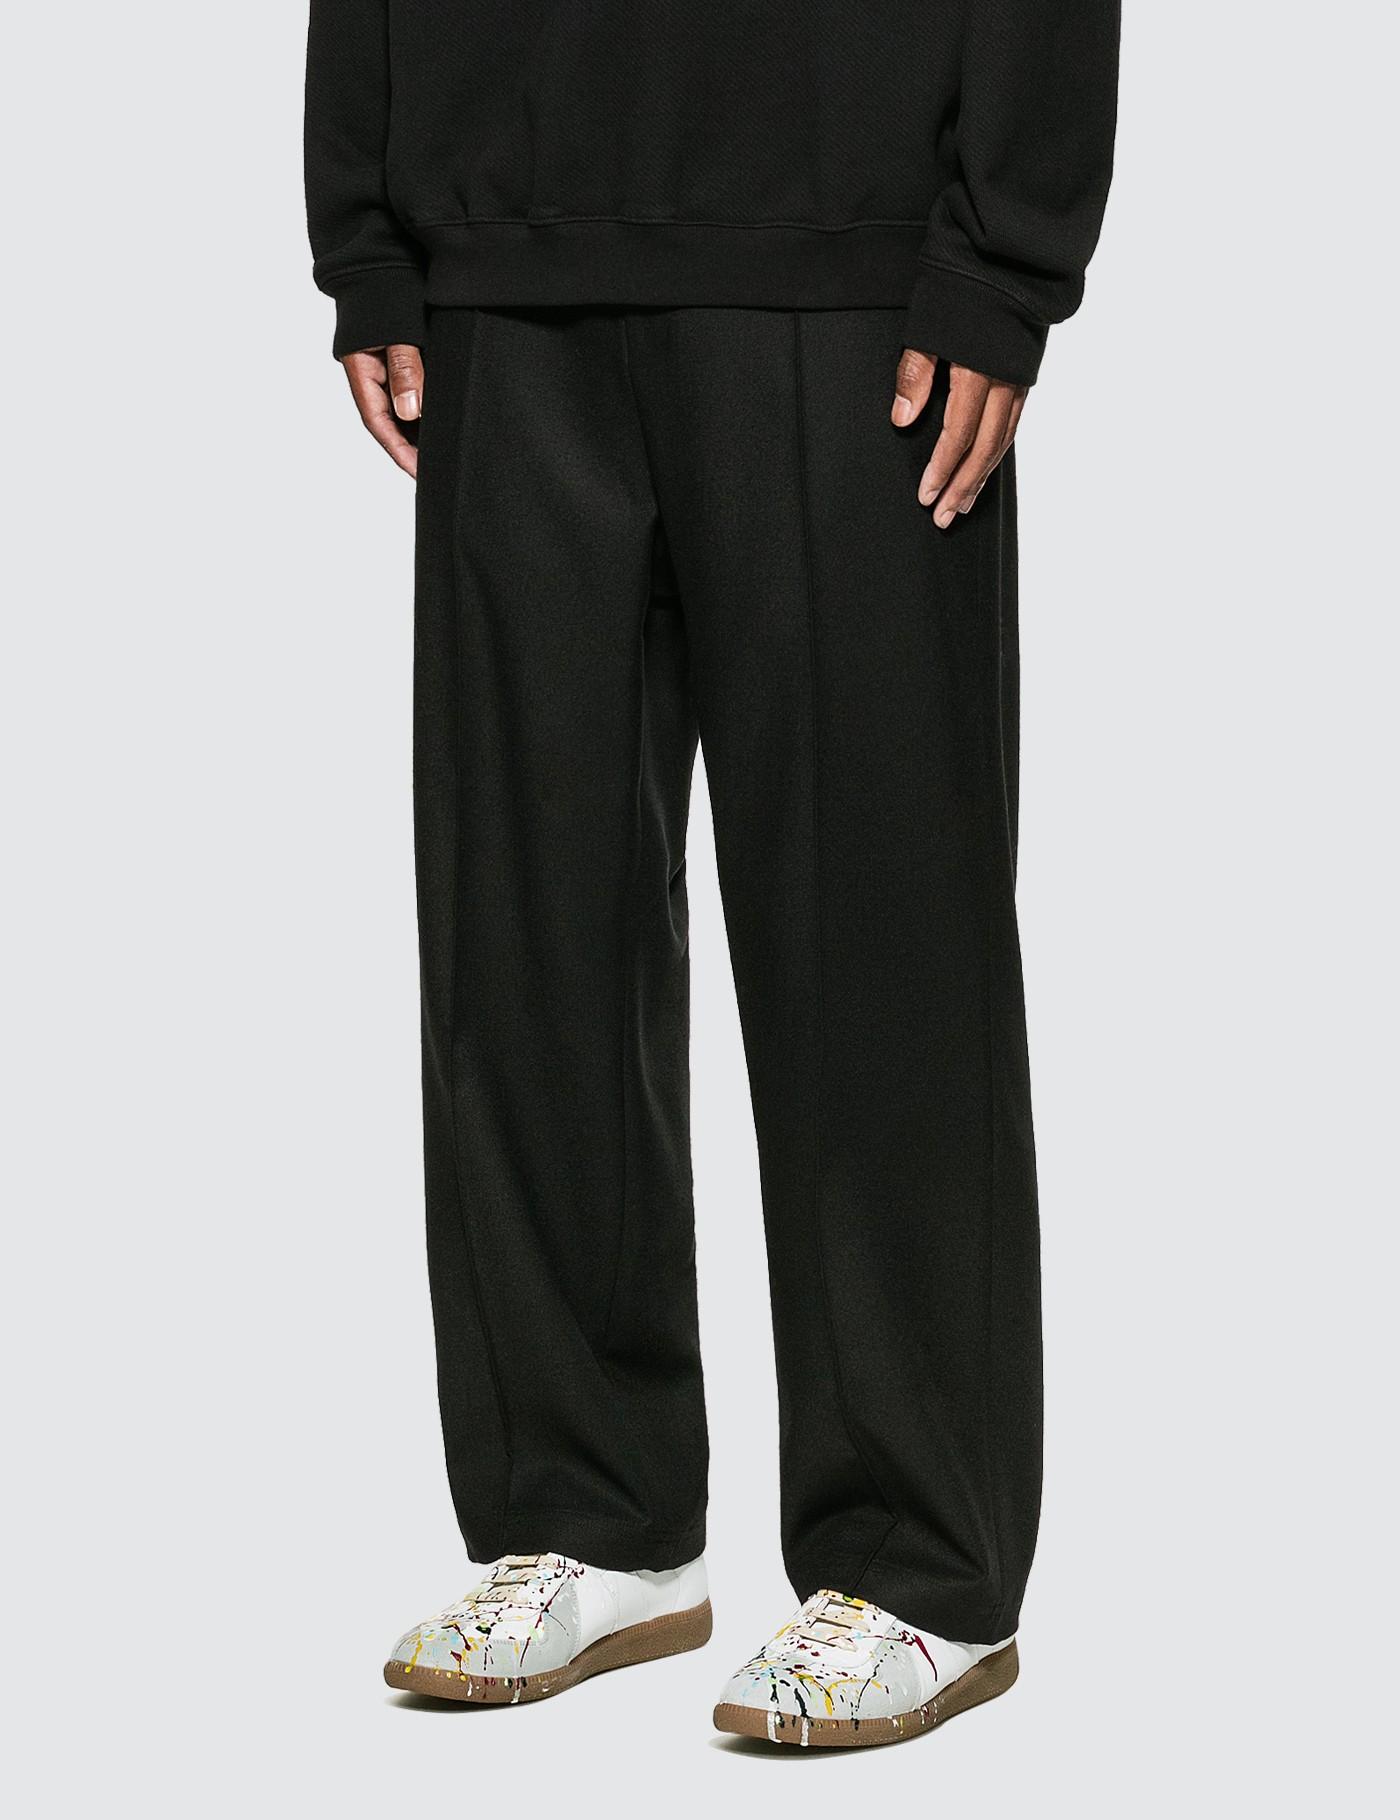 Maison Margiela Wool Flannel Pants in Black for Men - Lyst